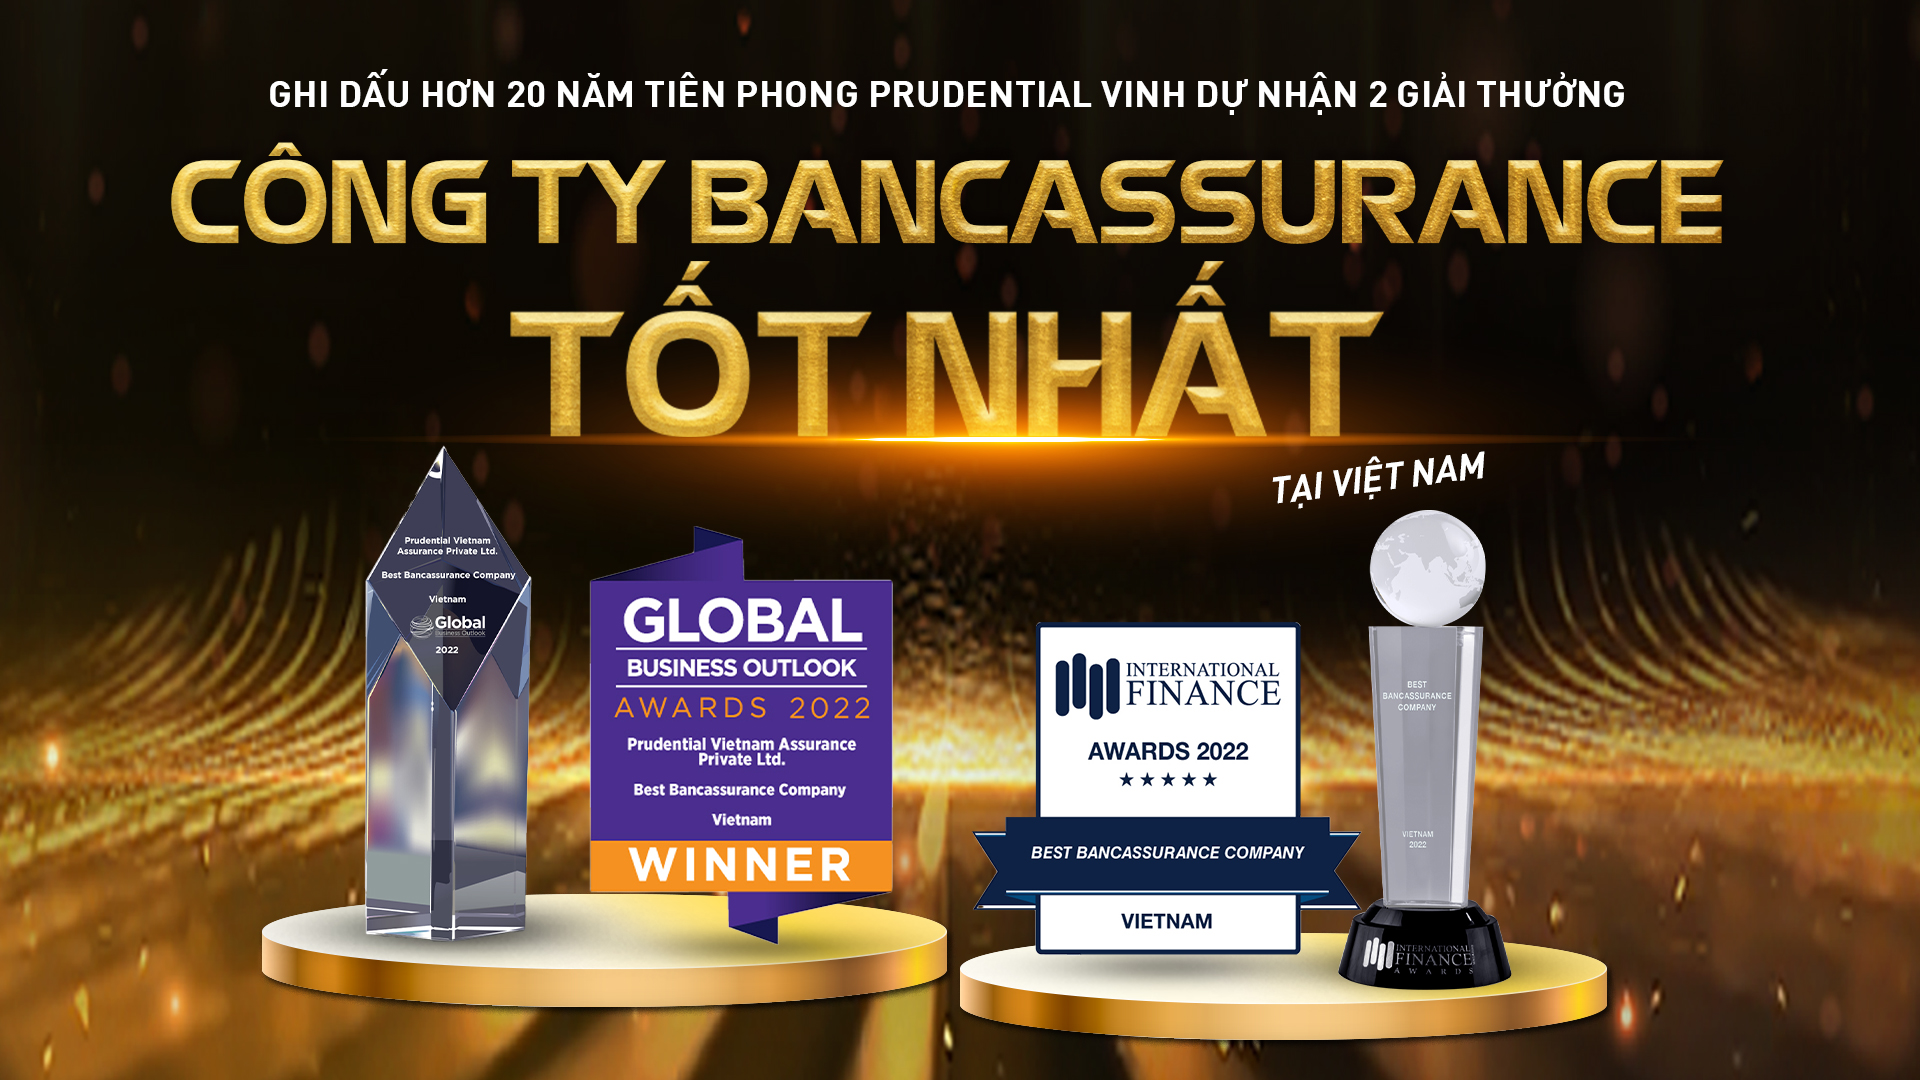 Prudential Việt Nam nhận hai giải thưởng uy tín cho kênh phân phối qua hợp tác Ngân hàng 3